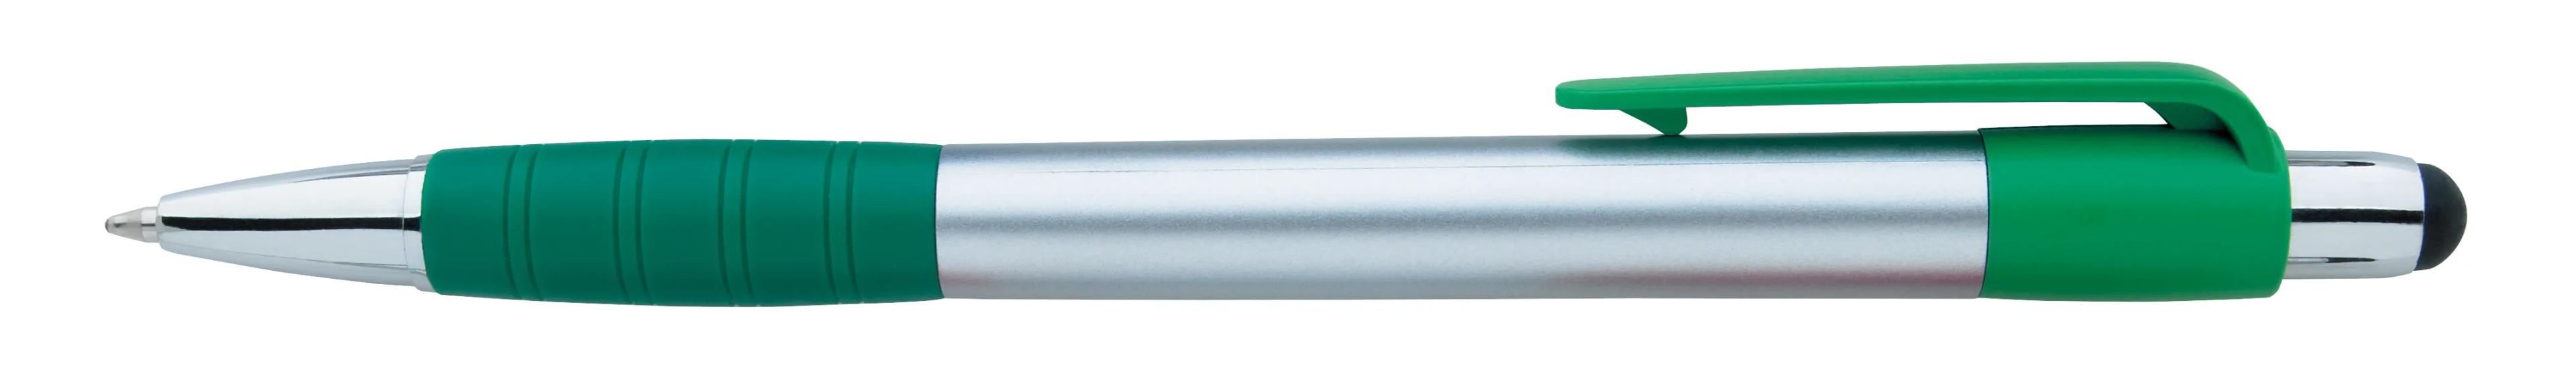 Silver Element Stylus Pen 8 of 53